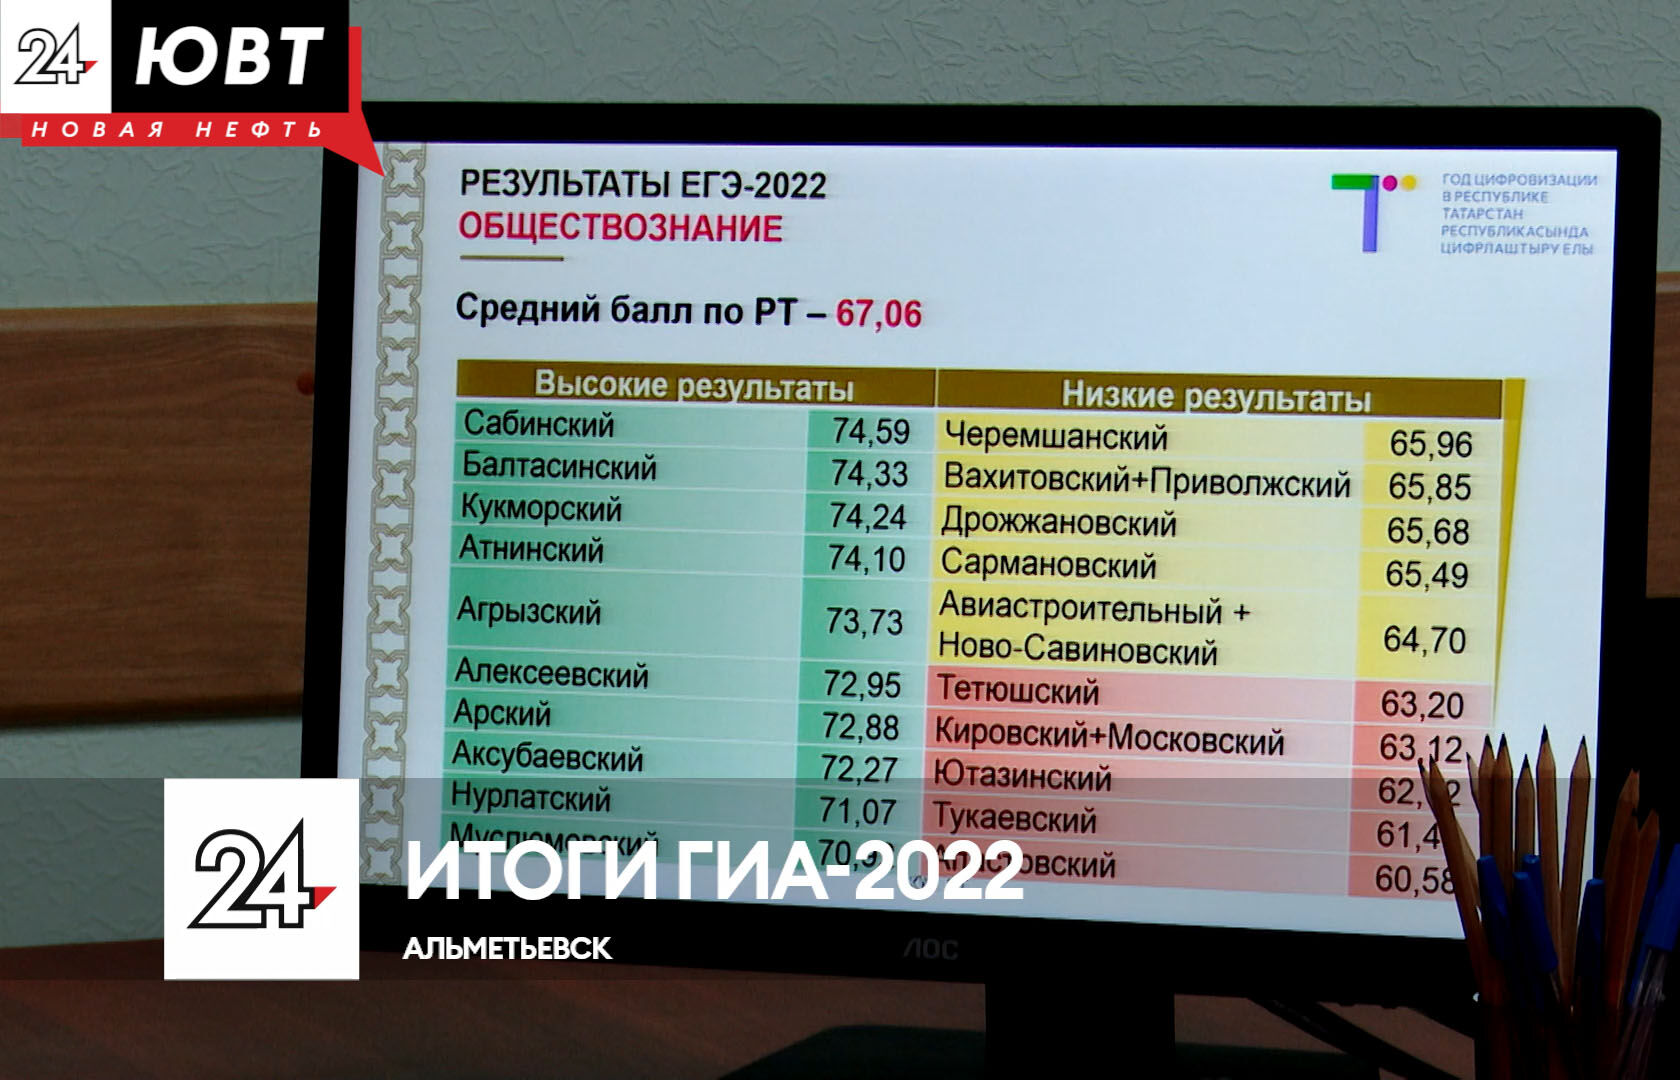 Альметьевский район вошёл в десятку лидеров по информатике